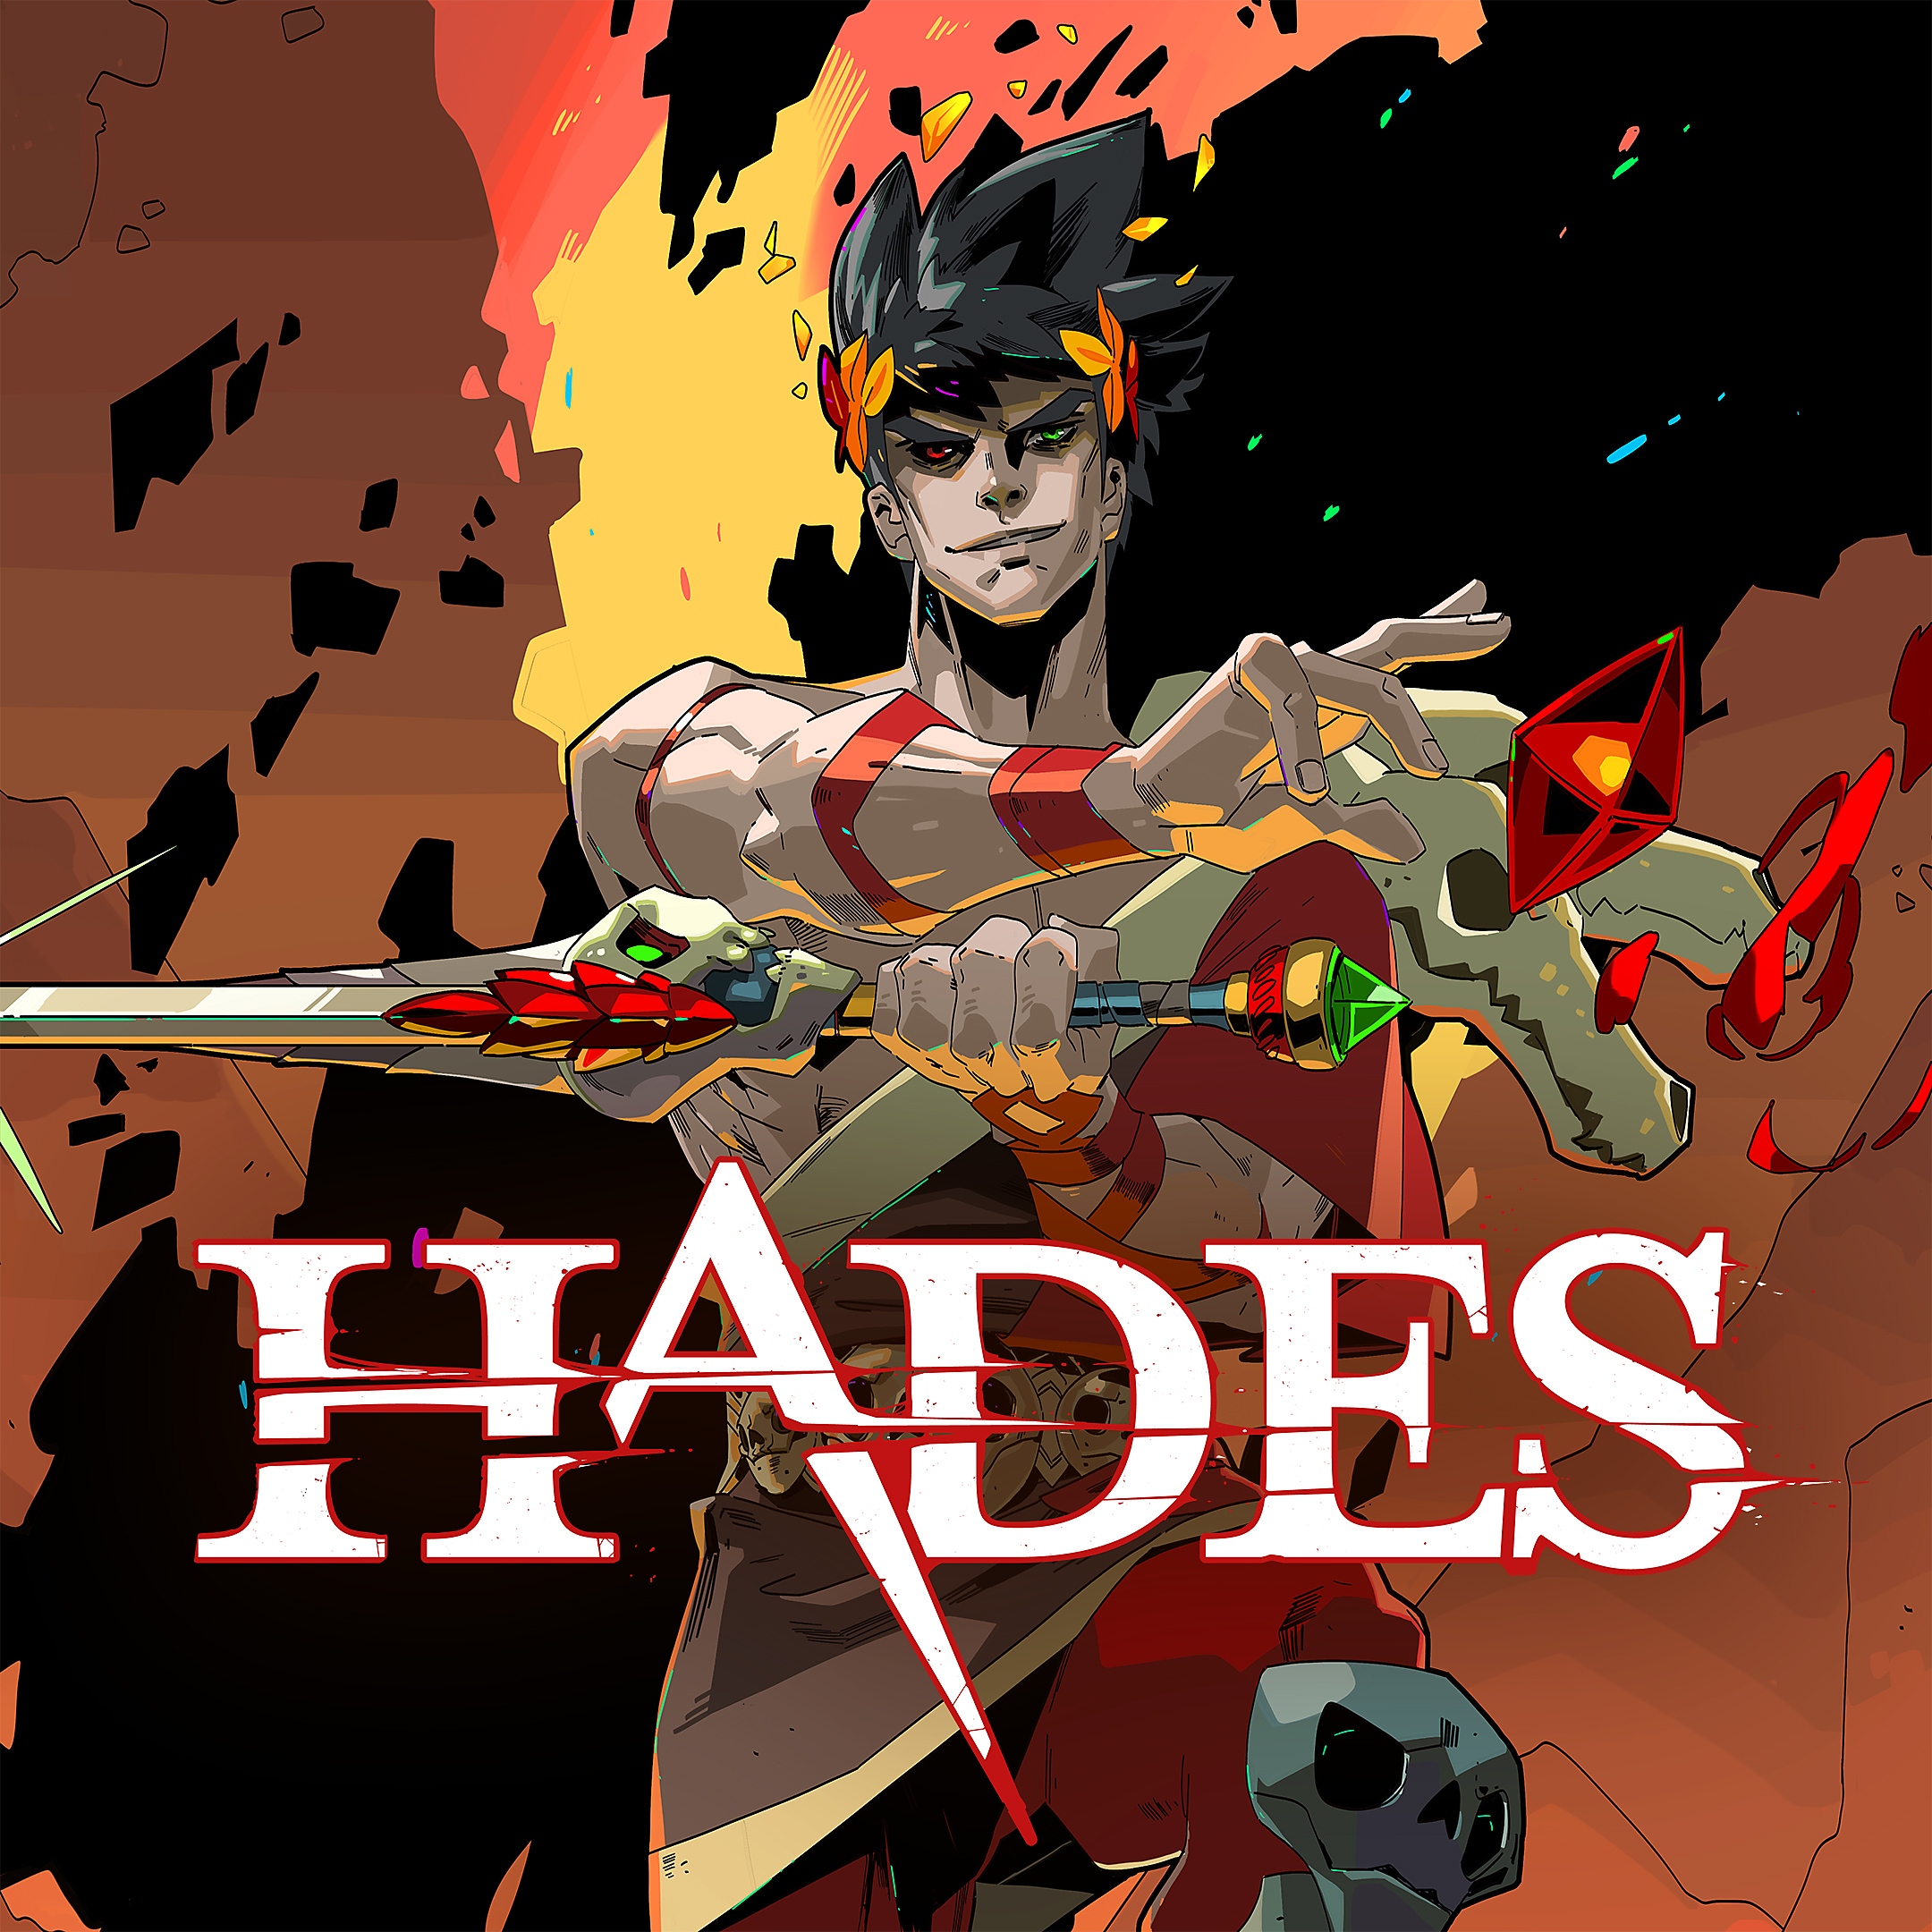 Hades key art